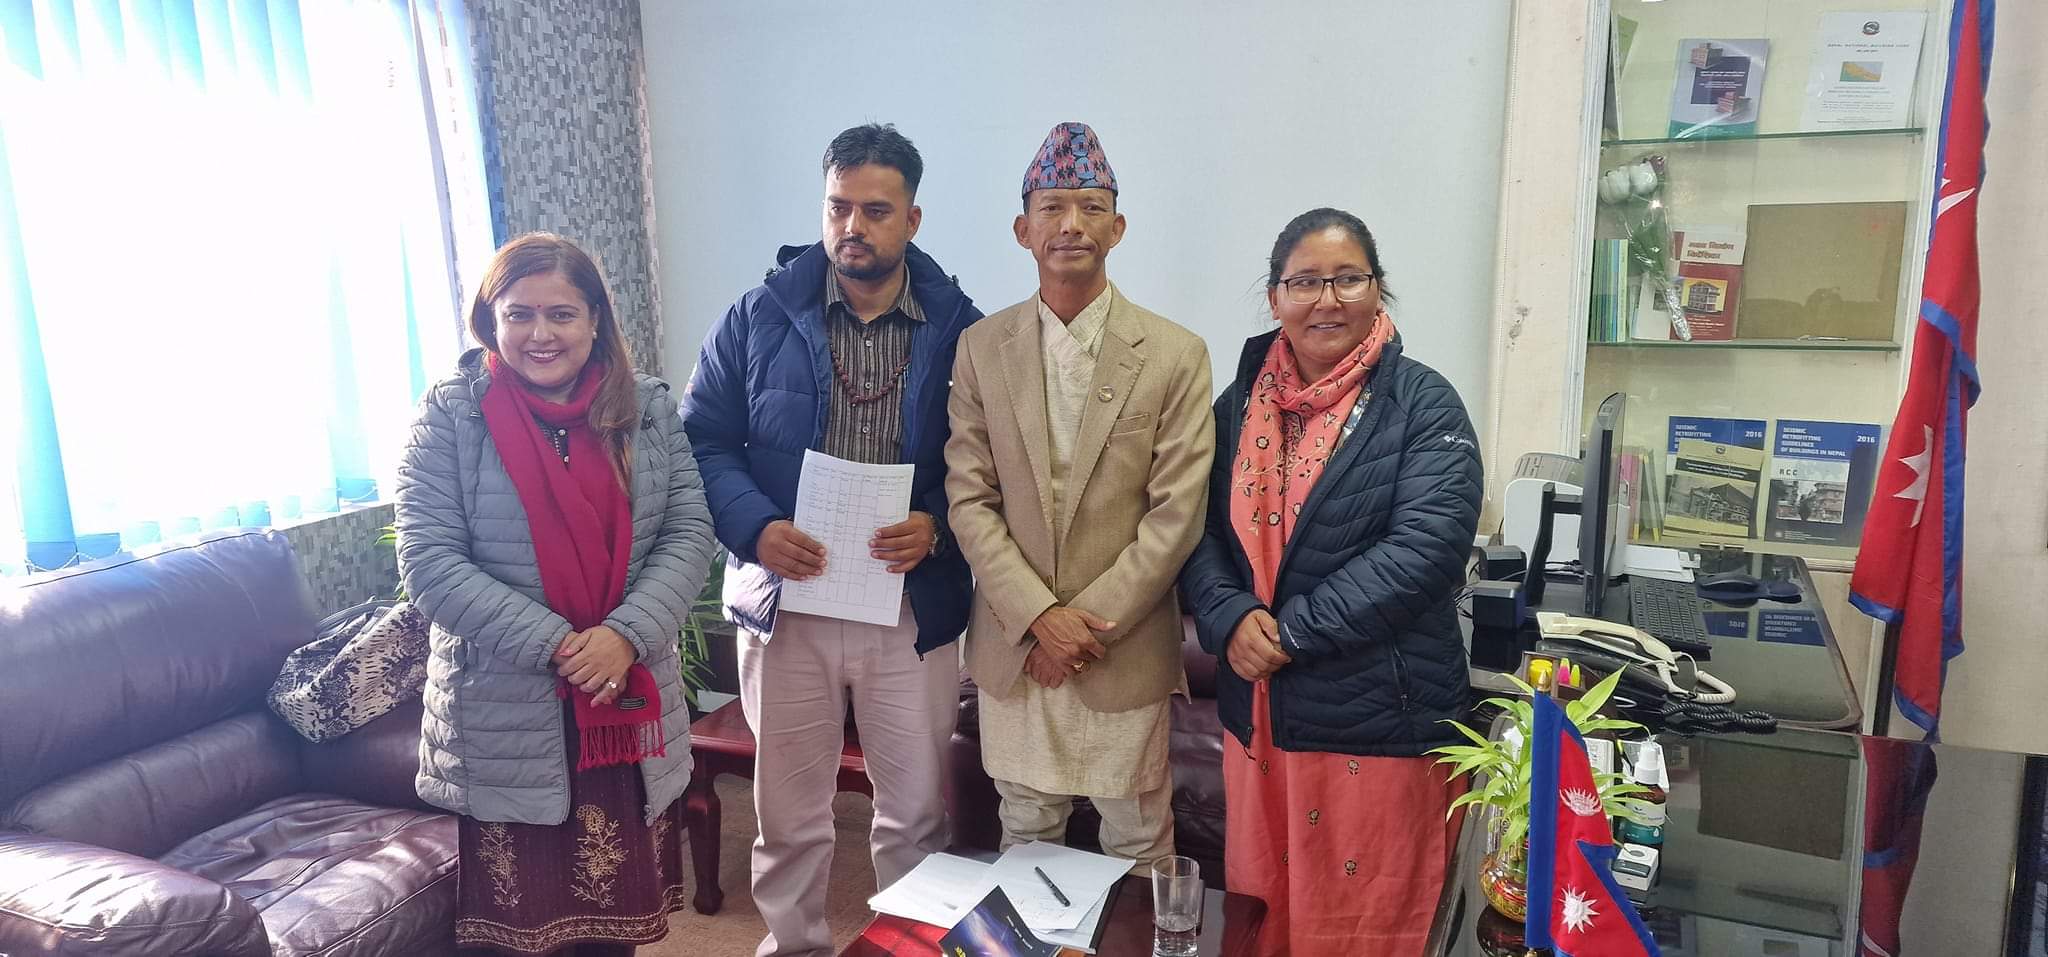 लुम्बिनी प्रदेश सांसद नमुना बिकासका योजना ल्याउन मन्त्रालयमा दौडधुप